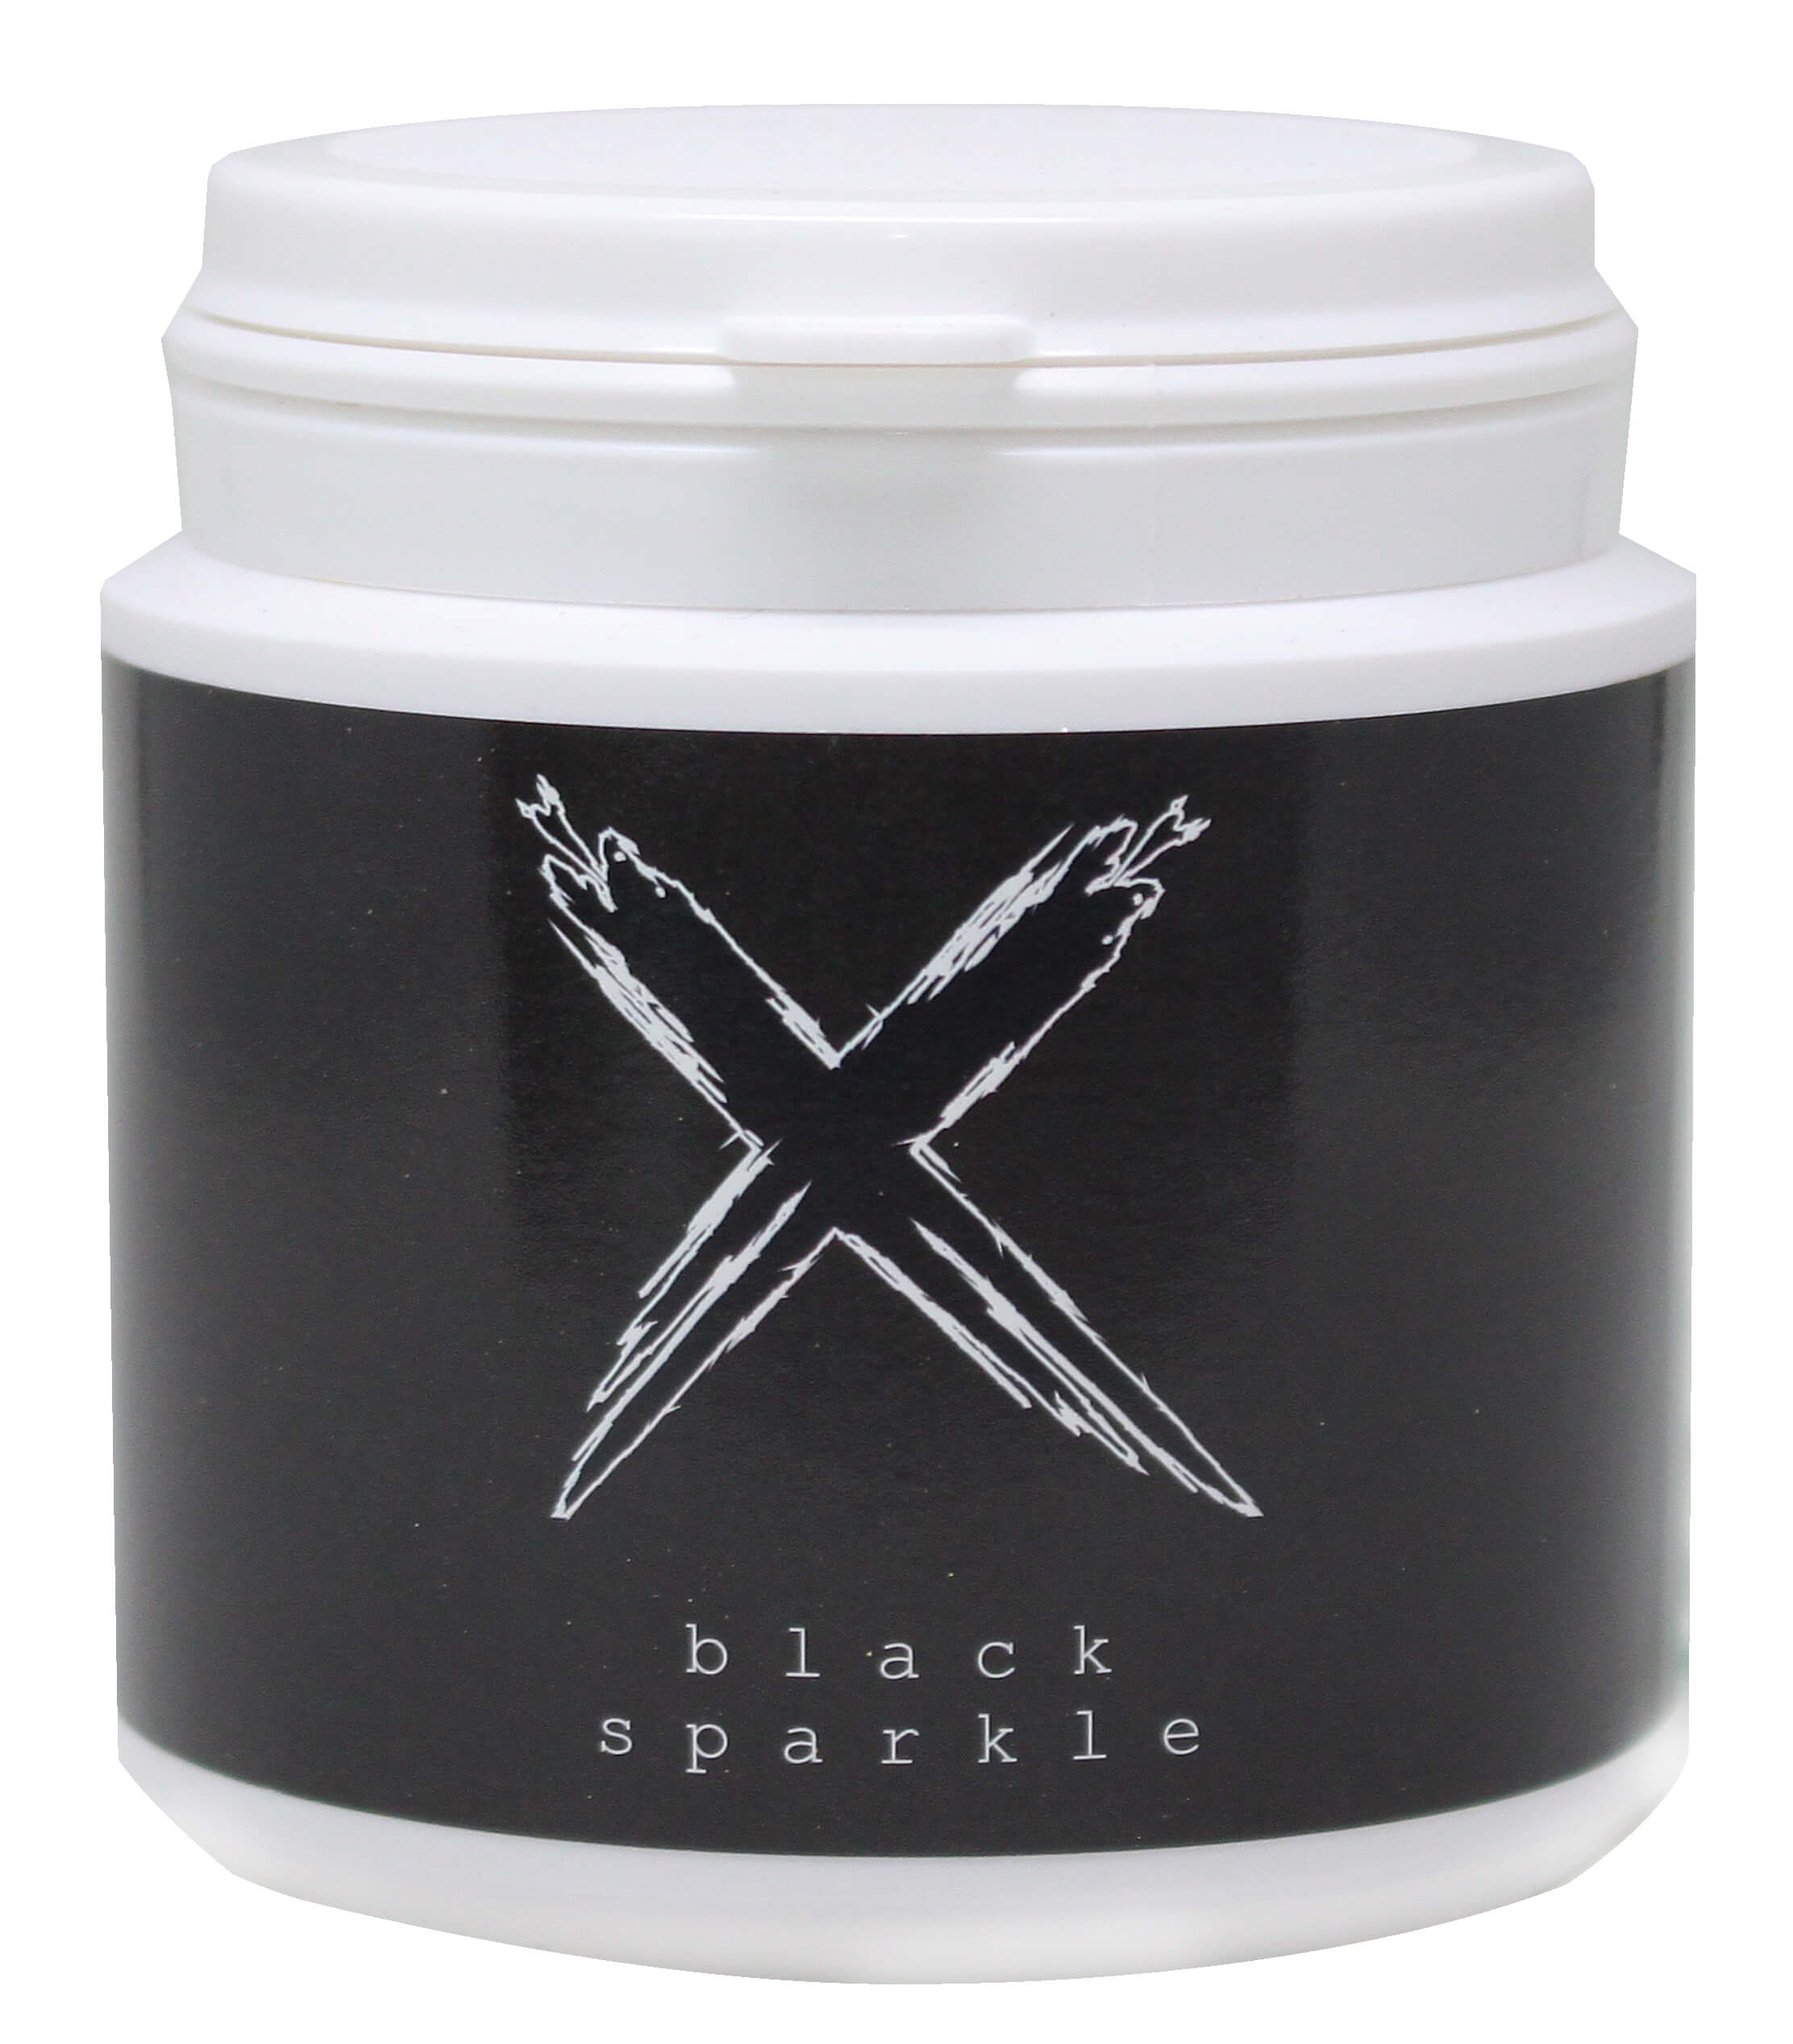 Xschischa Sparkles 50g | Black Sparkle